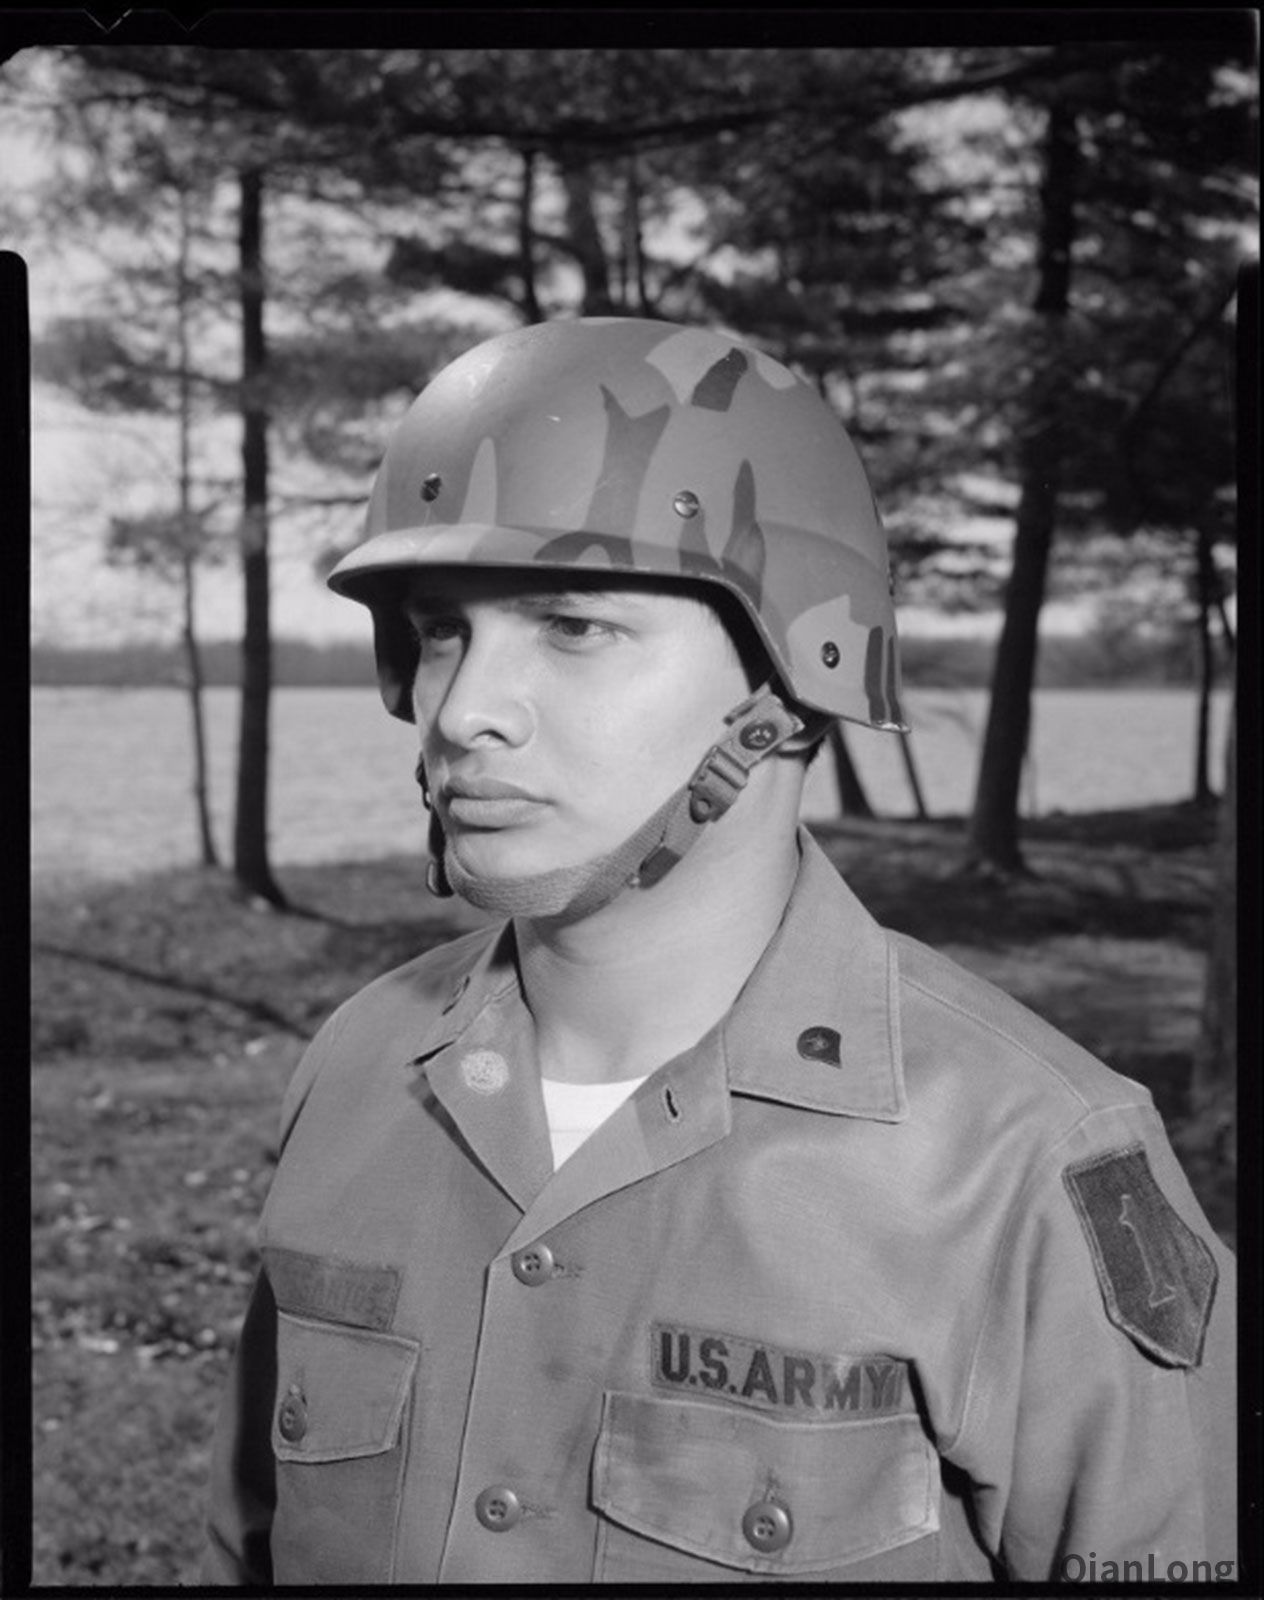 02.除了美軍外，美國境內的SWAT小組也裝備了大量的PASGT頭盔，甚至聯合國維和部隊也採用了該型頭盔。